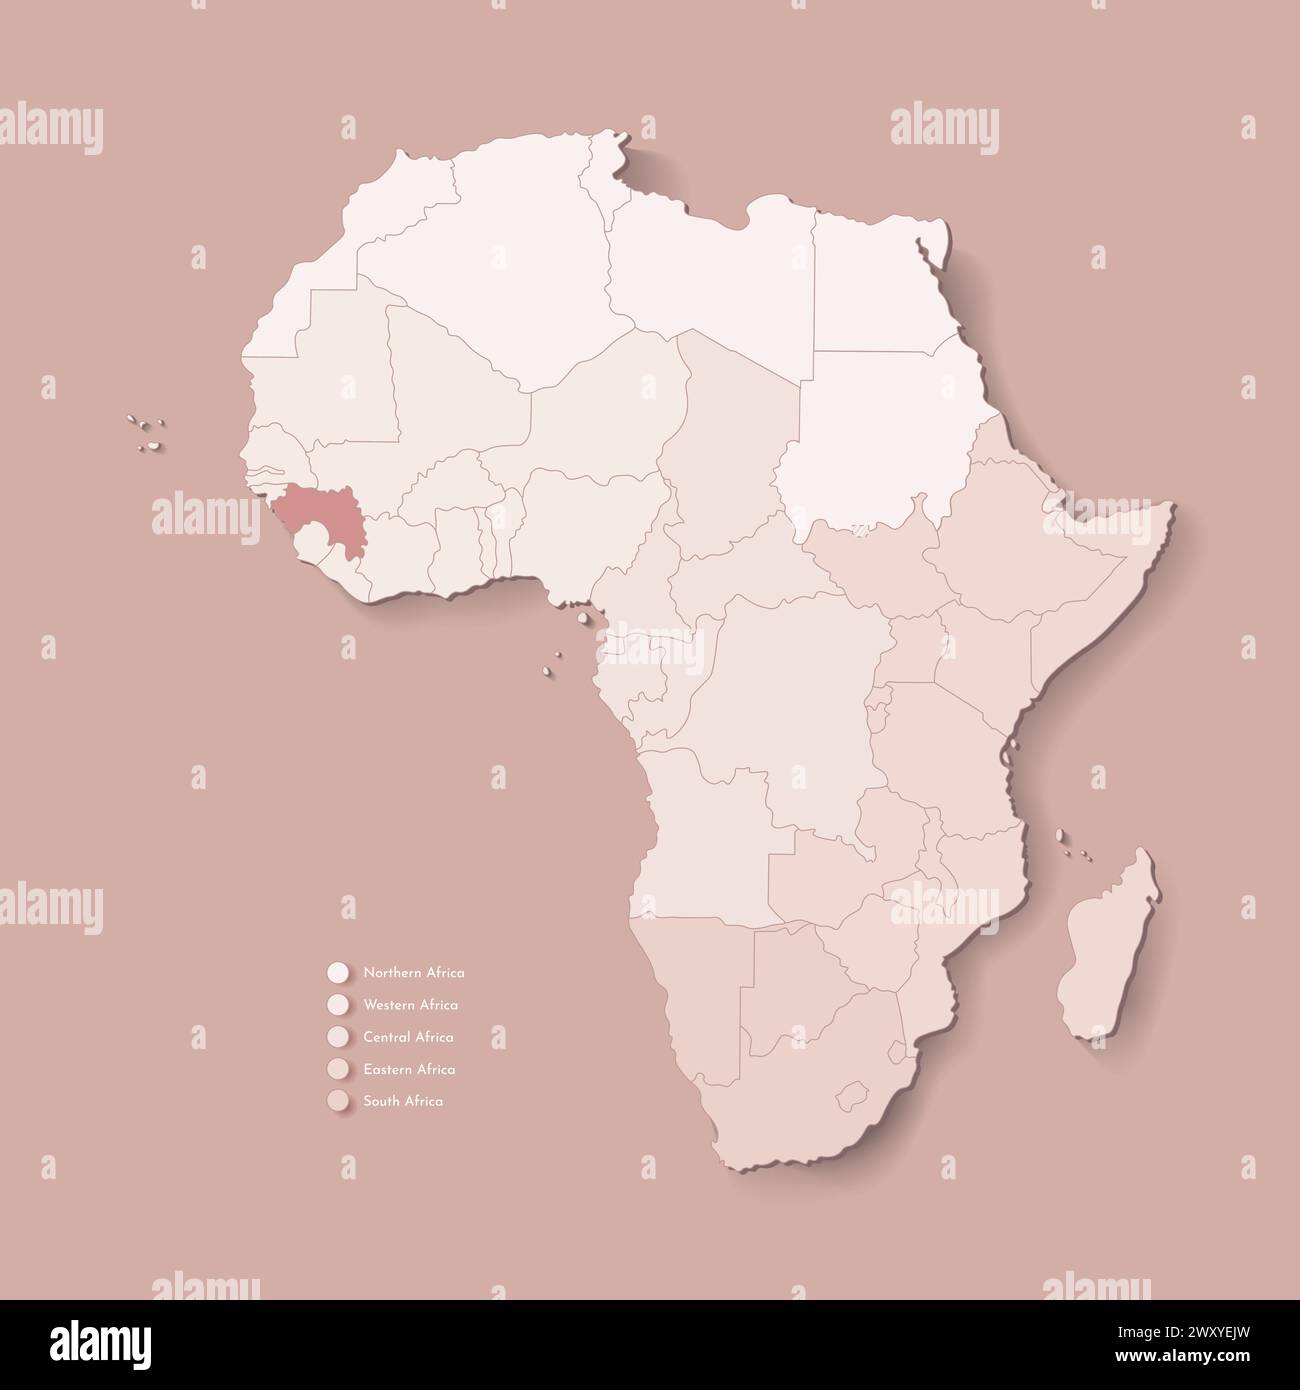 Illustrazione vettoriale con continente africano con confini di tutti gli stati e paese marcato Guinea. Mappa politica di colore marrone con occidentale, sud e. Illustrazione Vettoriale